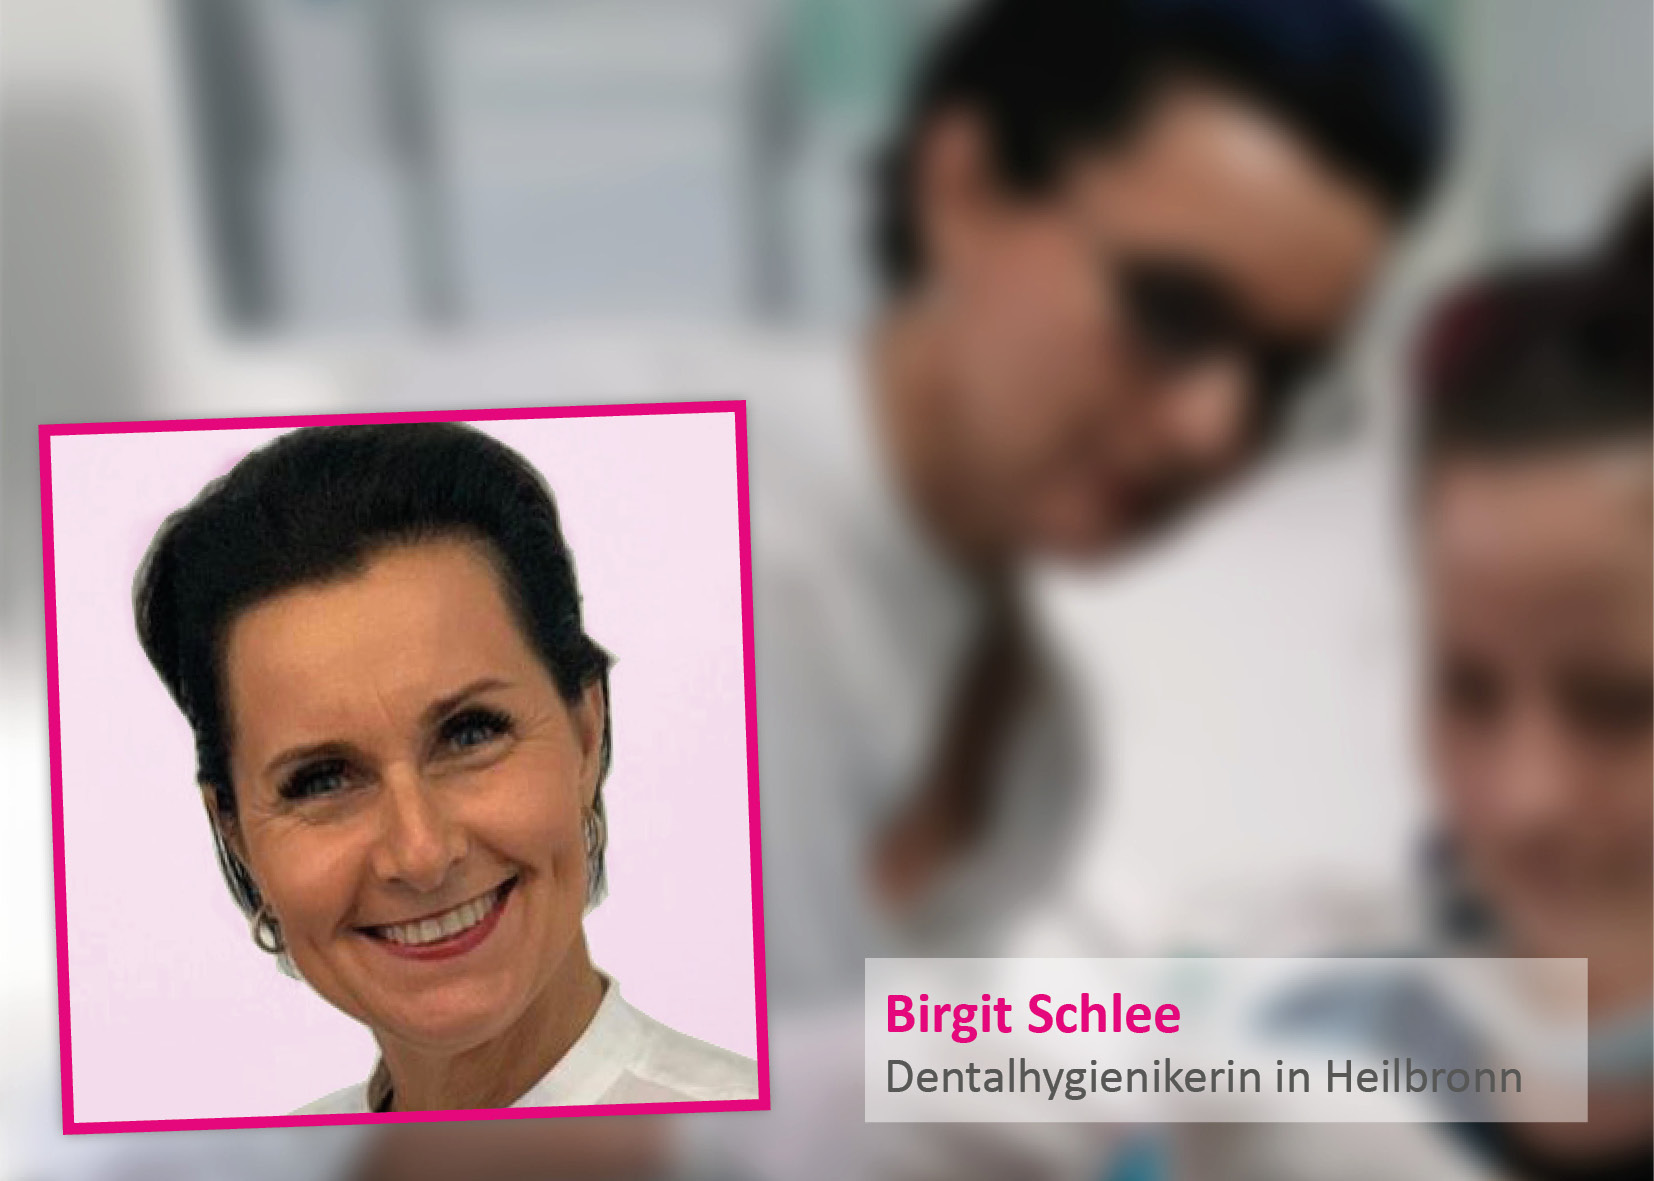 Birgit Schlee, dental hygienist